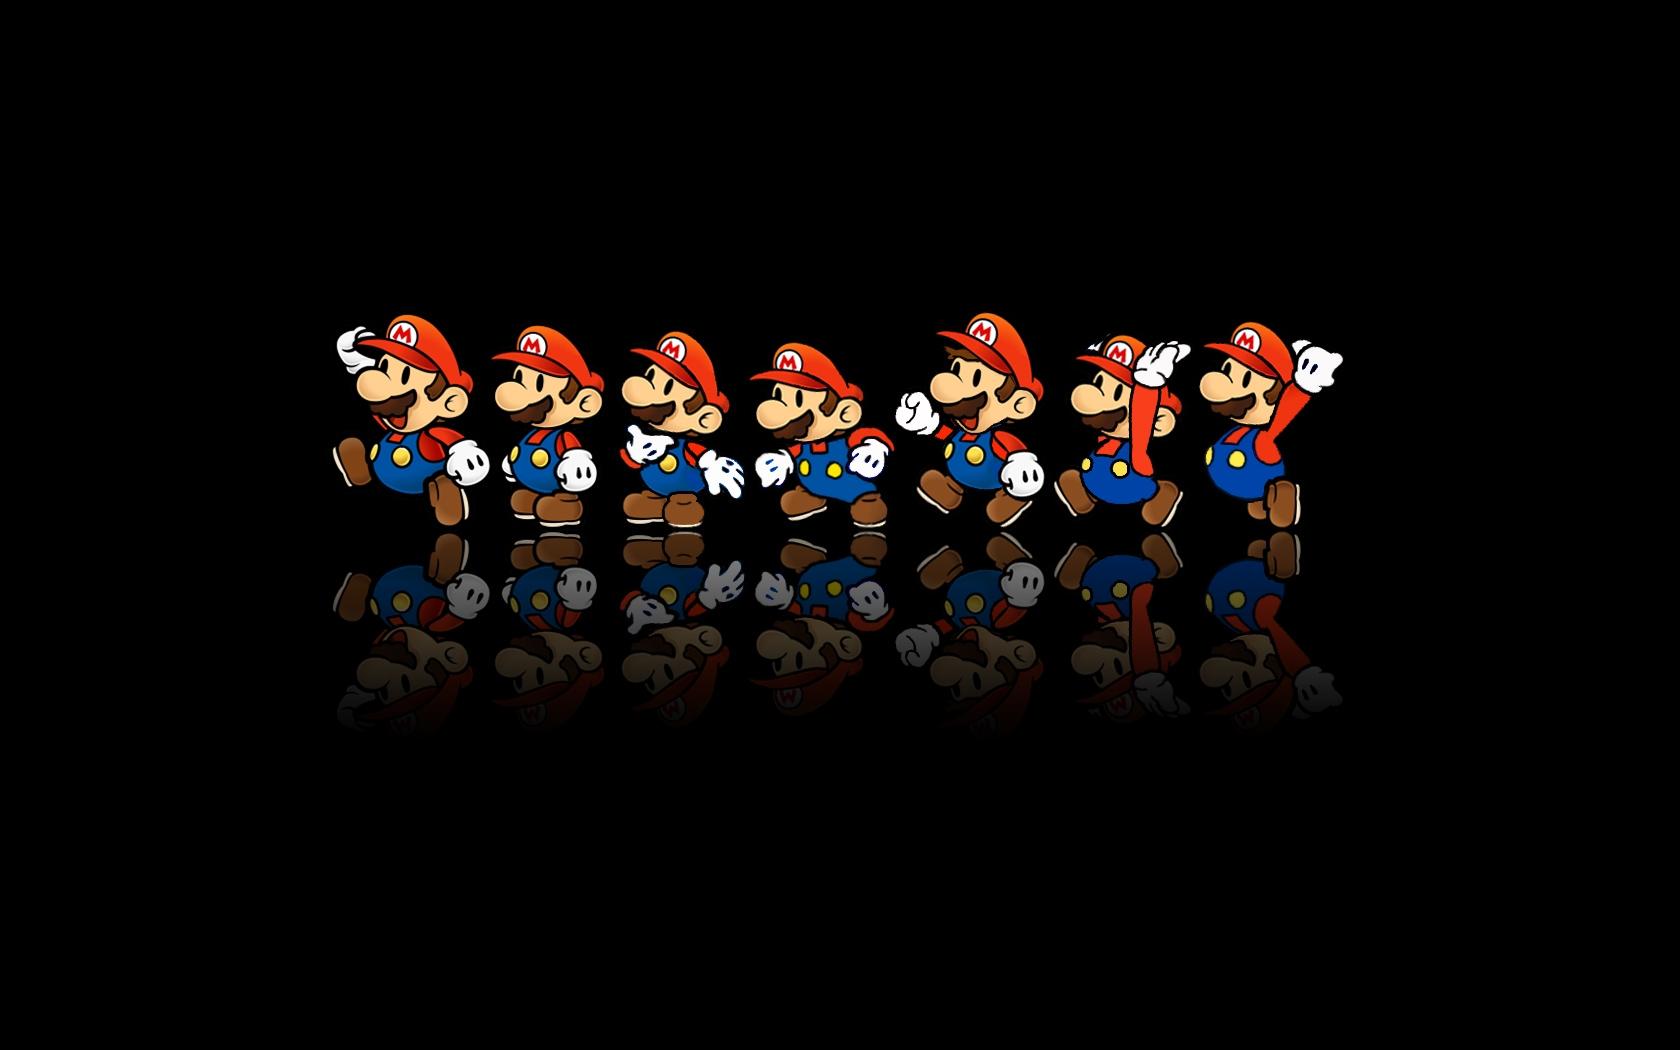 Mario, Mario Bros, Super Mario, Super Mario Bros, paper mario